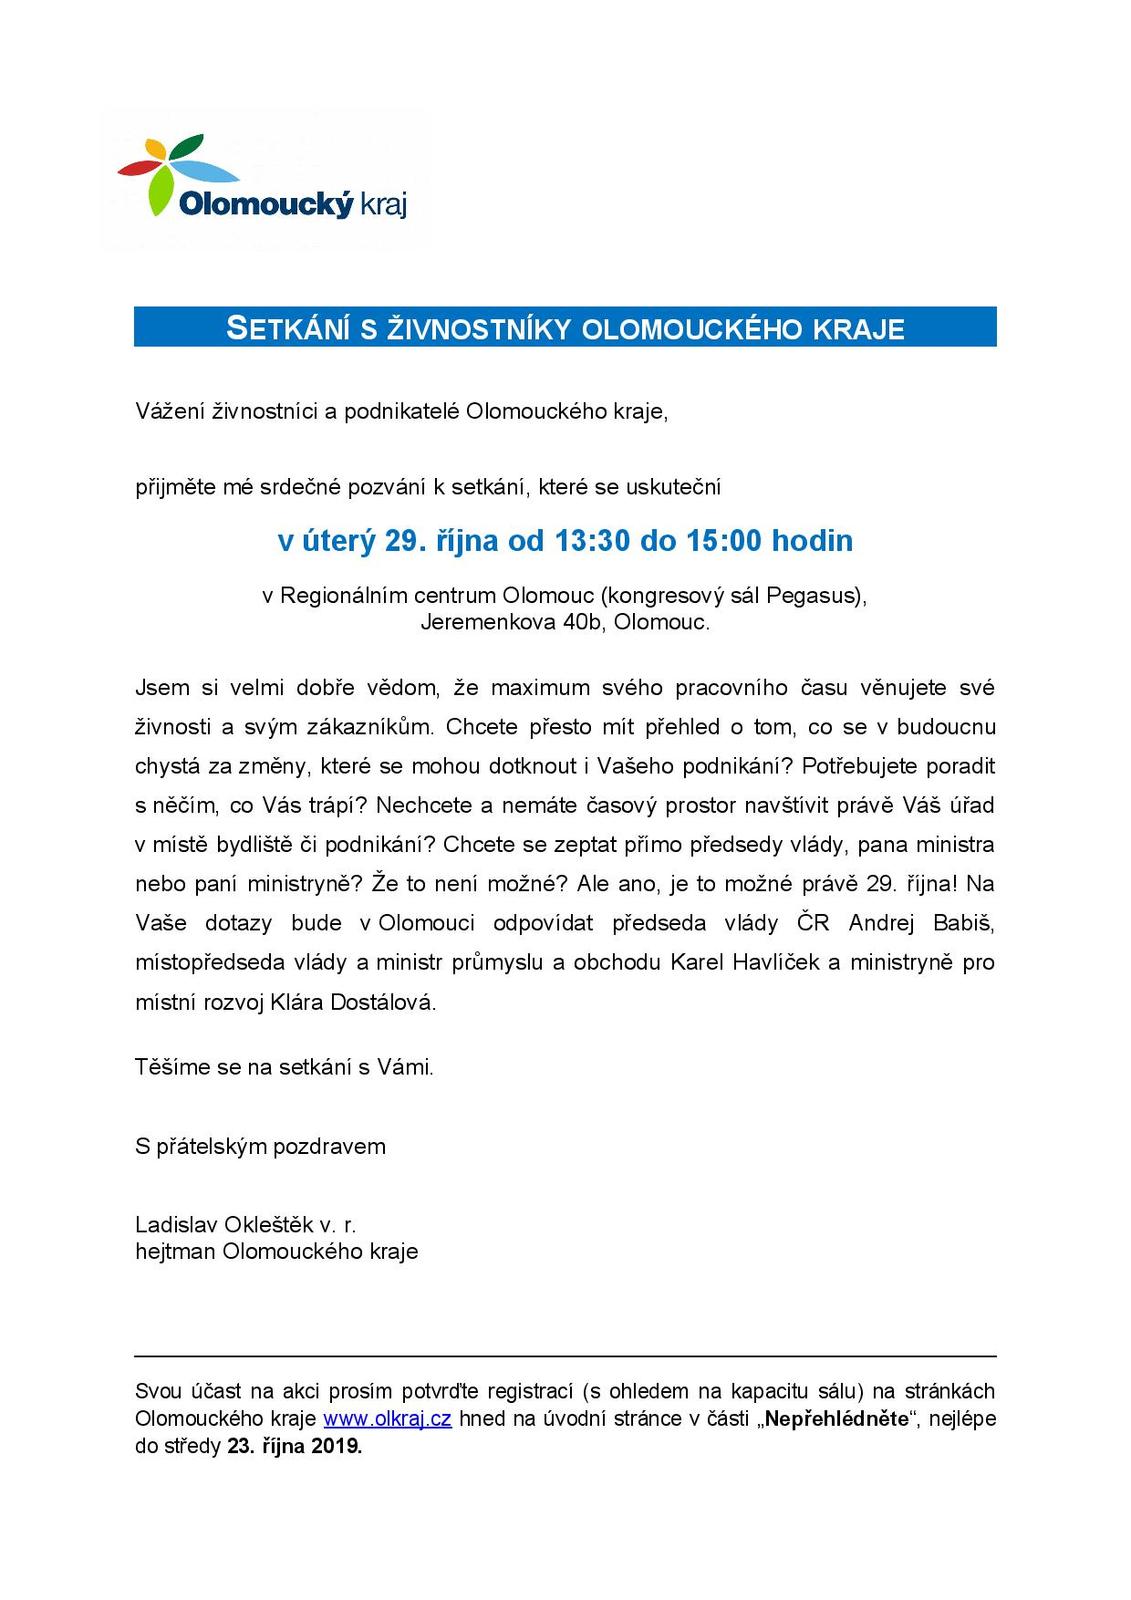 Pozvánka na setkání s živnostníky - 29. 10. 2019 Olomouc-1-page-001.jpg